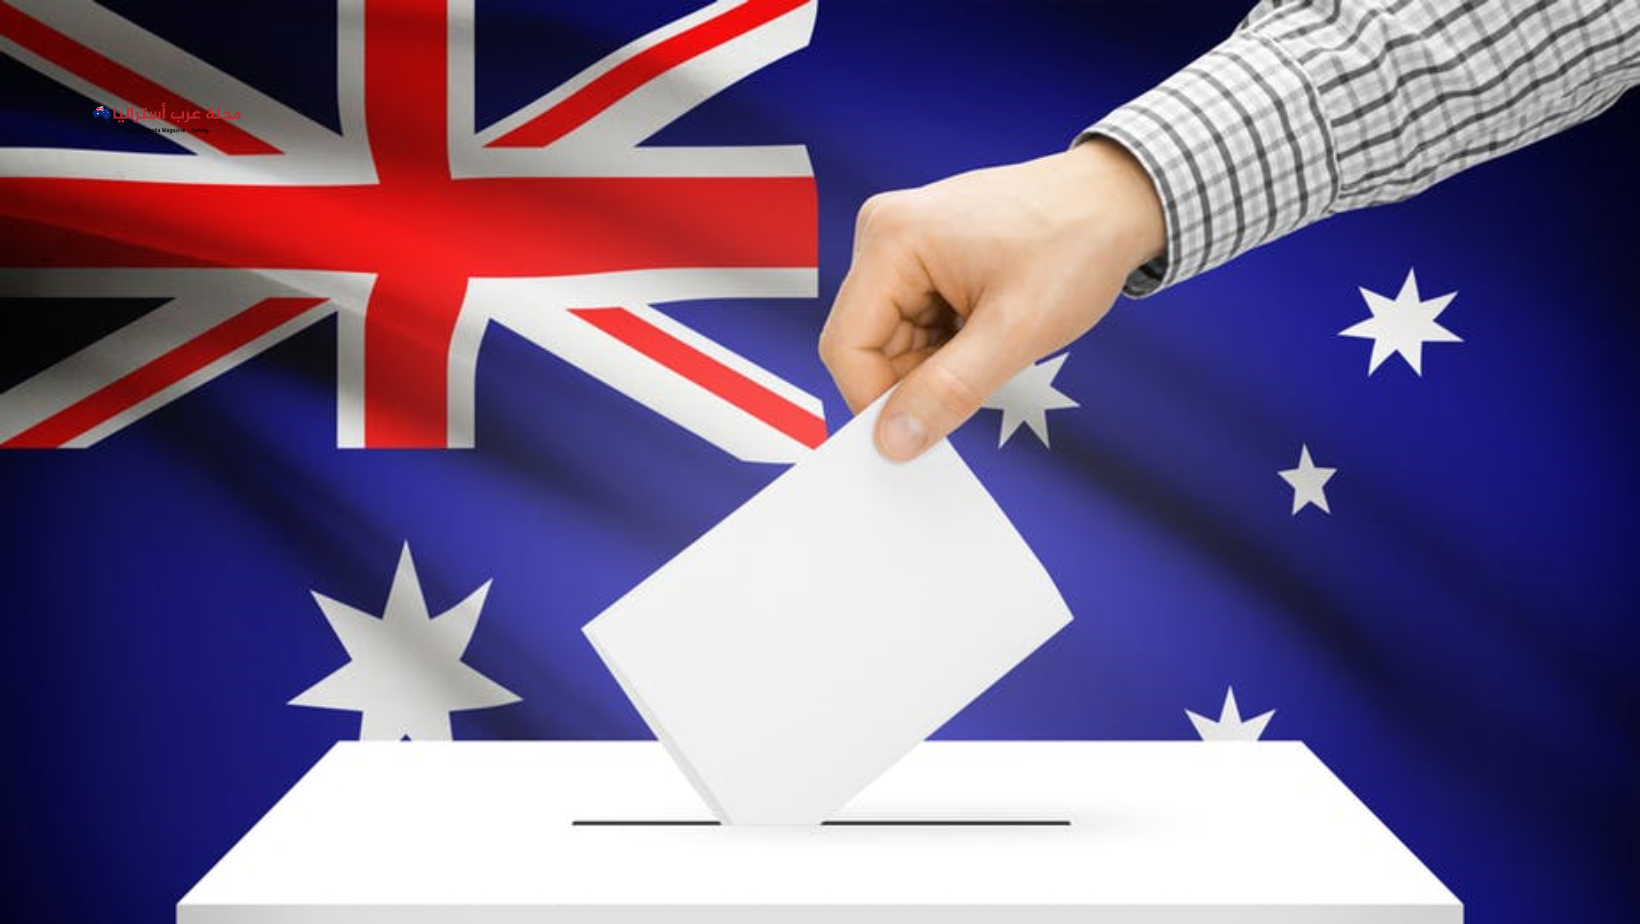 المفوضية الأسترالية للانتخابات(AEC) تحثّ الجاليات متعددة الثقافات على المشاركة الفعالة في الاستفتاء